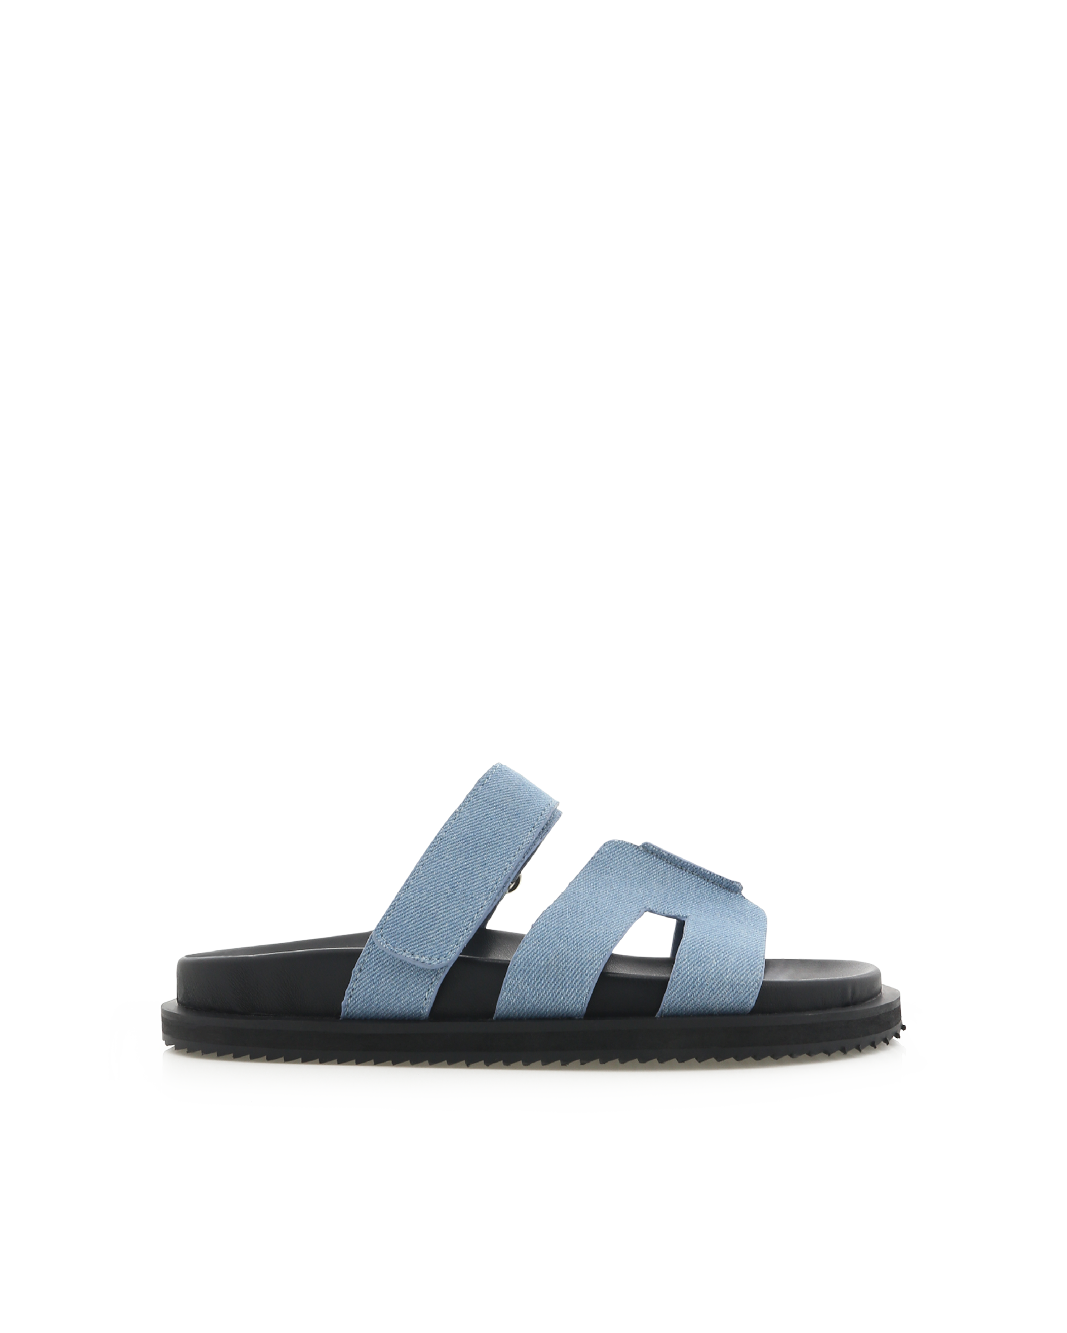 THEON - BLUE DENIM-Sandals-Billini-Billini